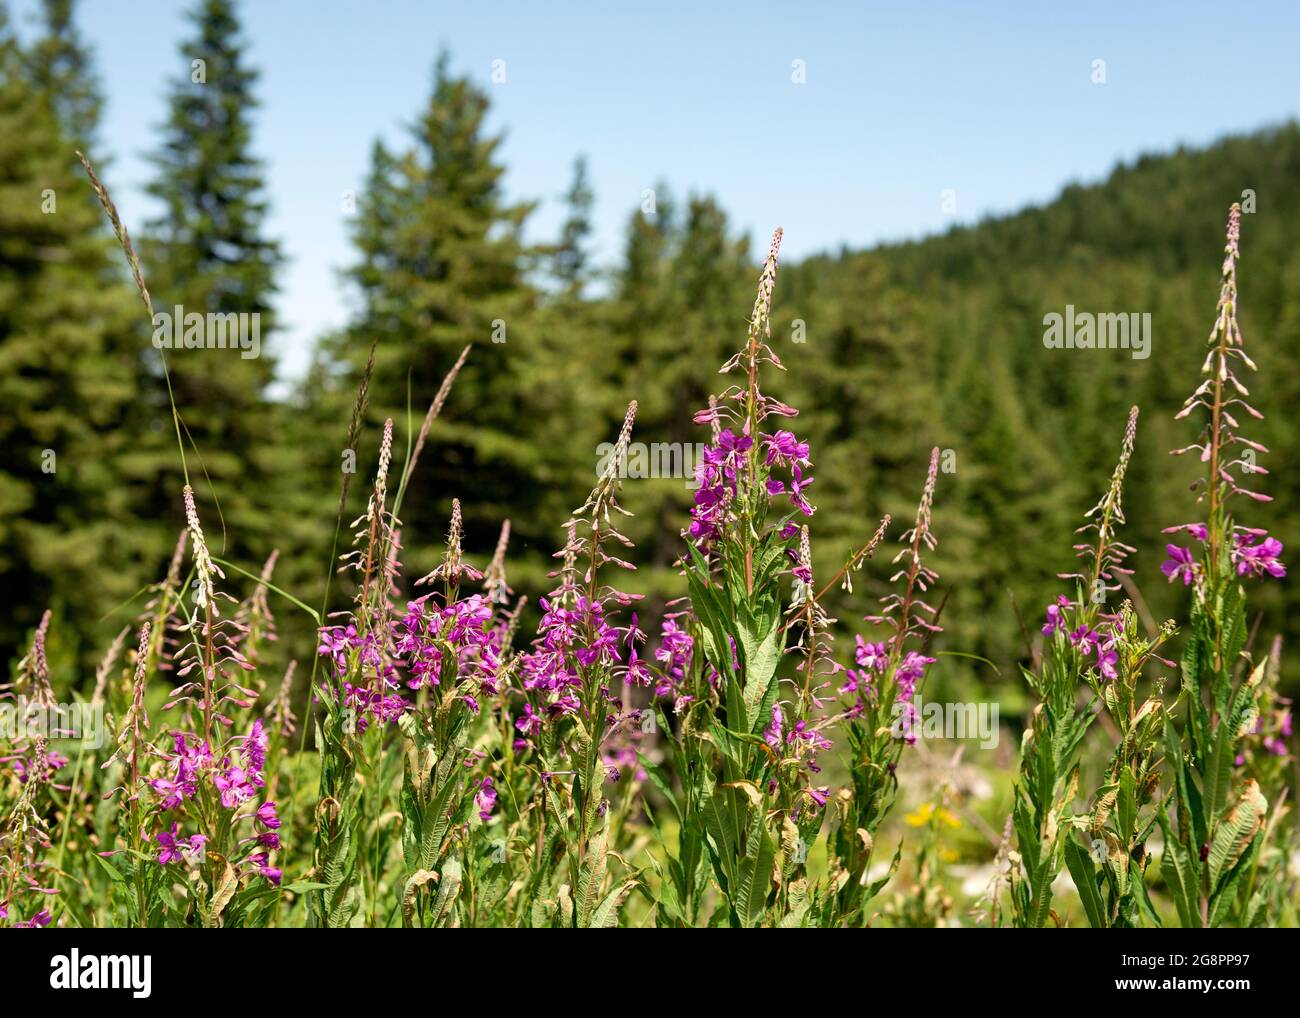 Epilobium angustifolium ou Chamerion angustifolium ou Fireweed ou Rosebay Willowherb poussant dans un habitat naturel dans la réserve naturelle de Rila, Bulgarie Banque D'Images